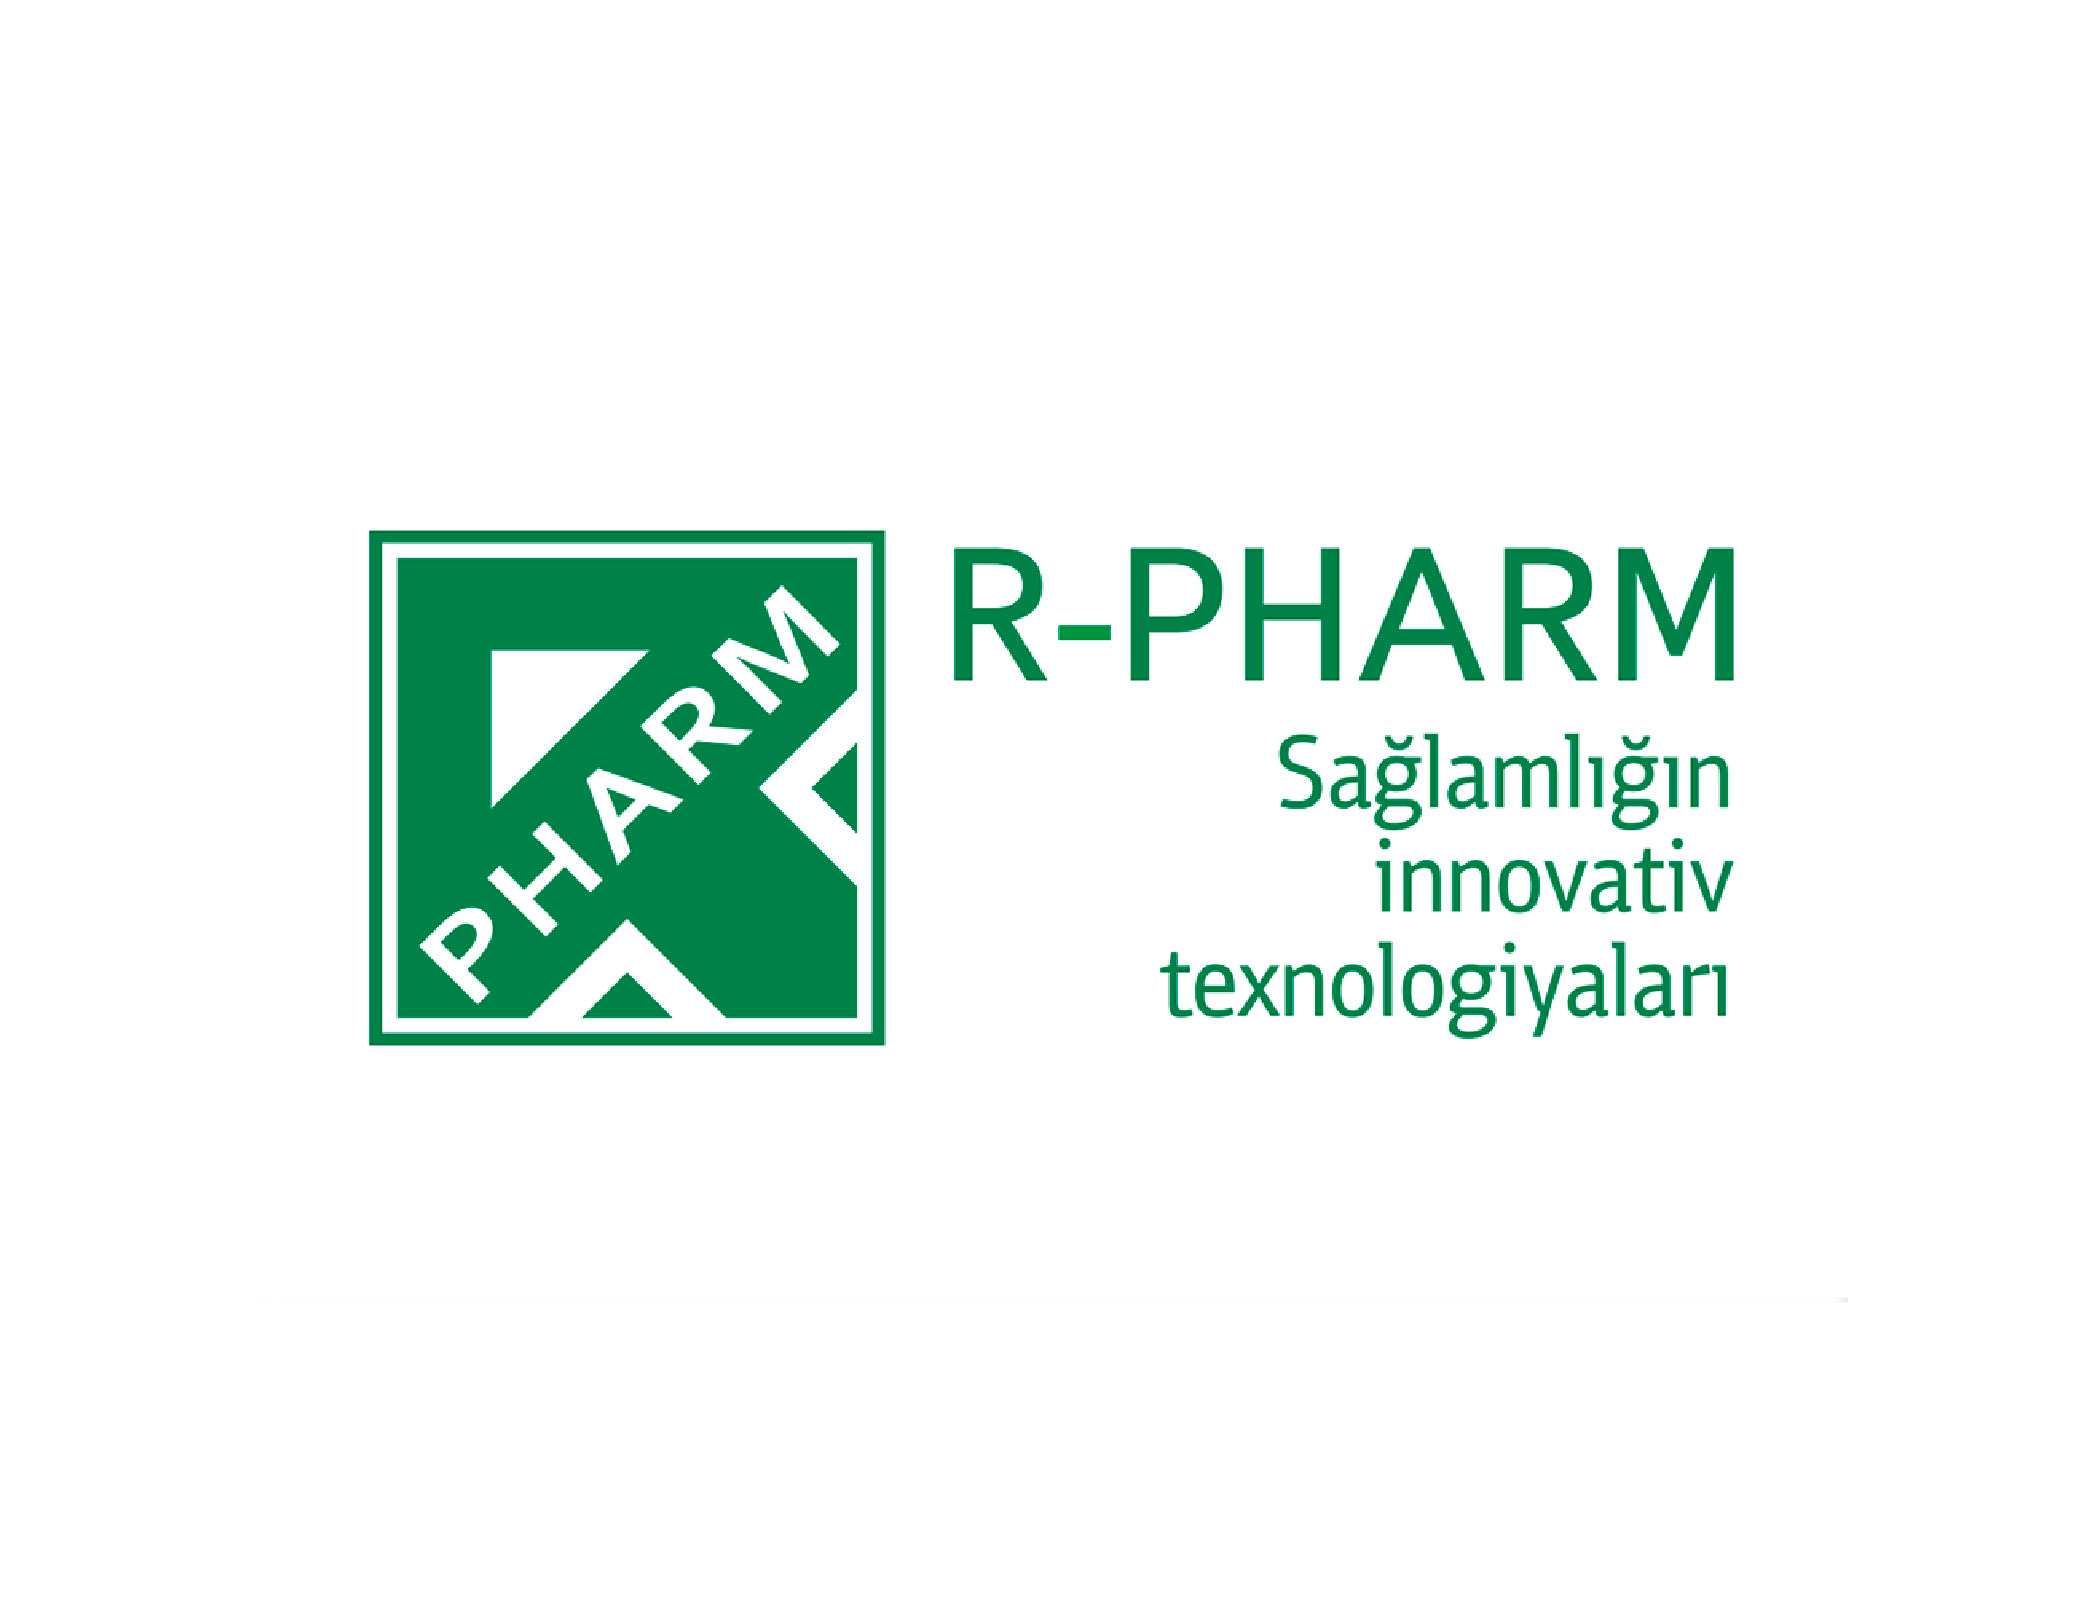 Азербайджанский фармацевтический завод группы компаний "Р-Фарм" заключил соглашение с французской компанией Servier